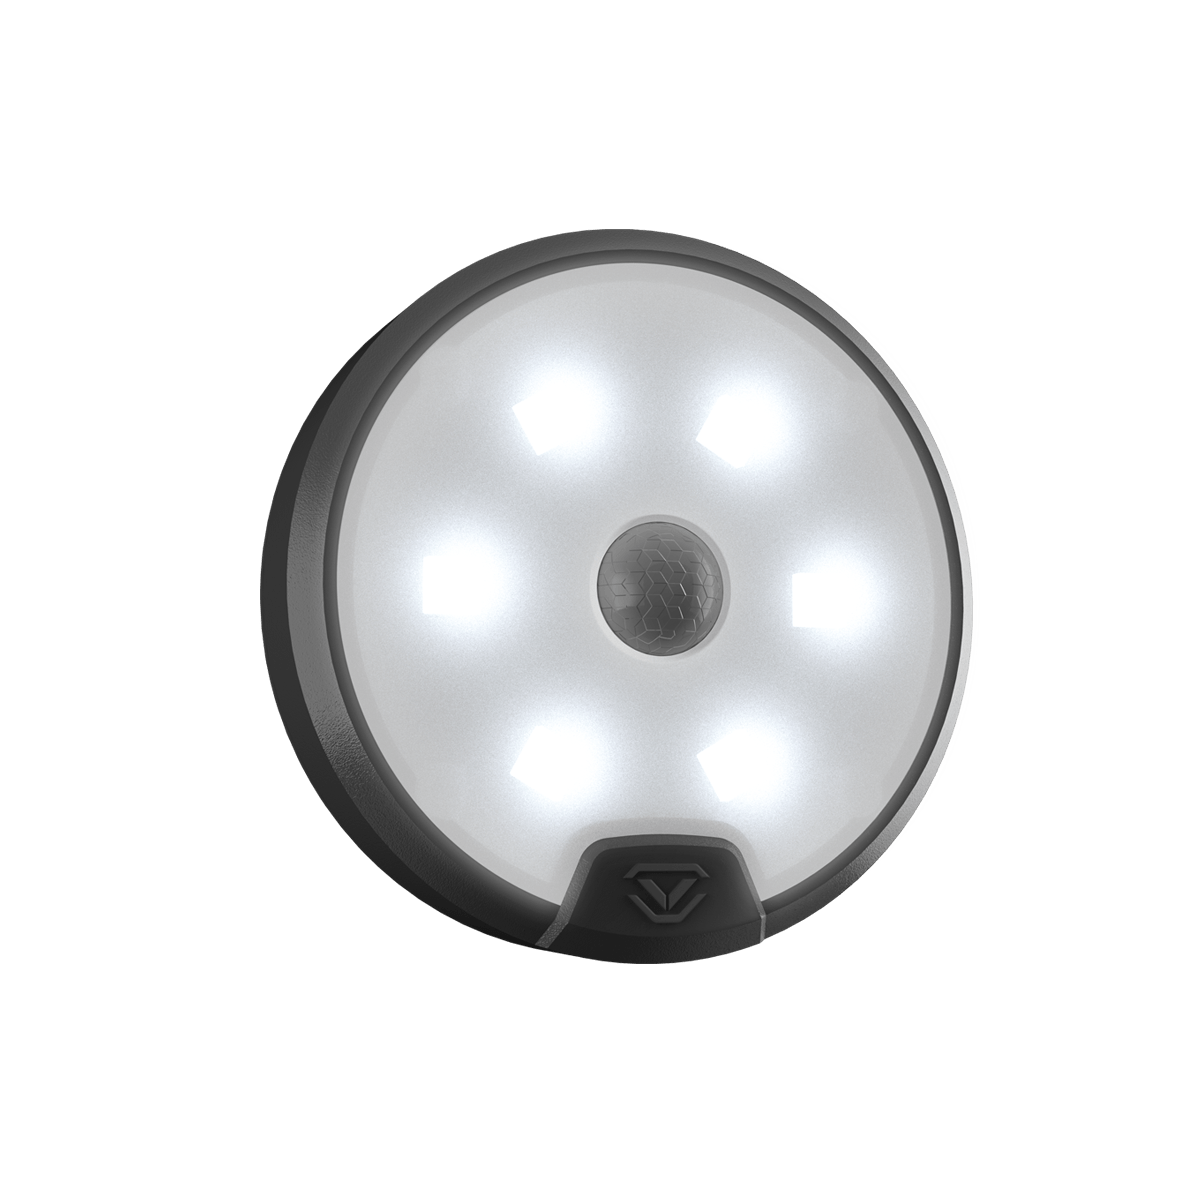 Vaultek VLED6 Universal LED Light for RS500i Turned On